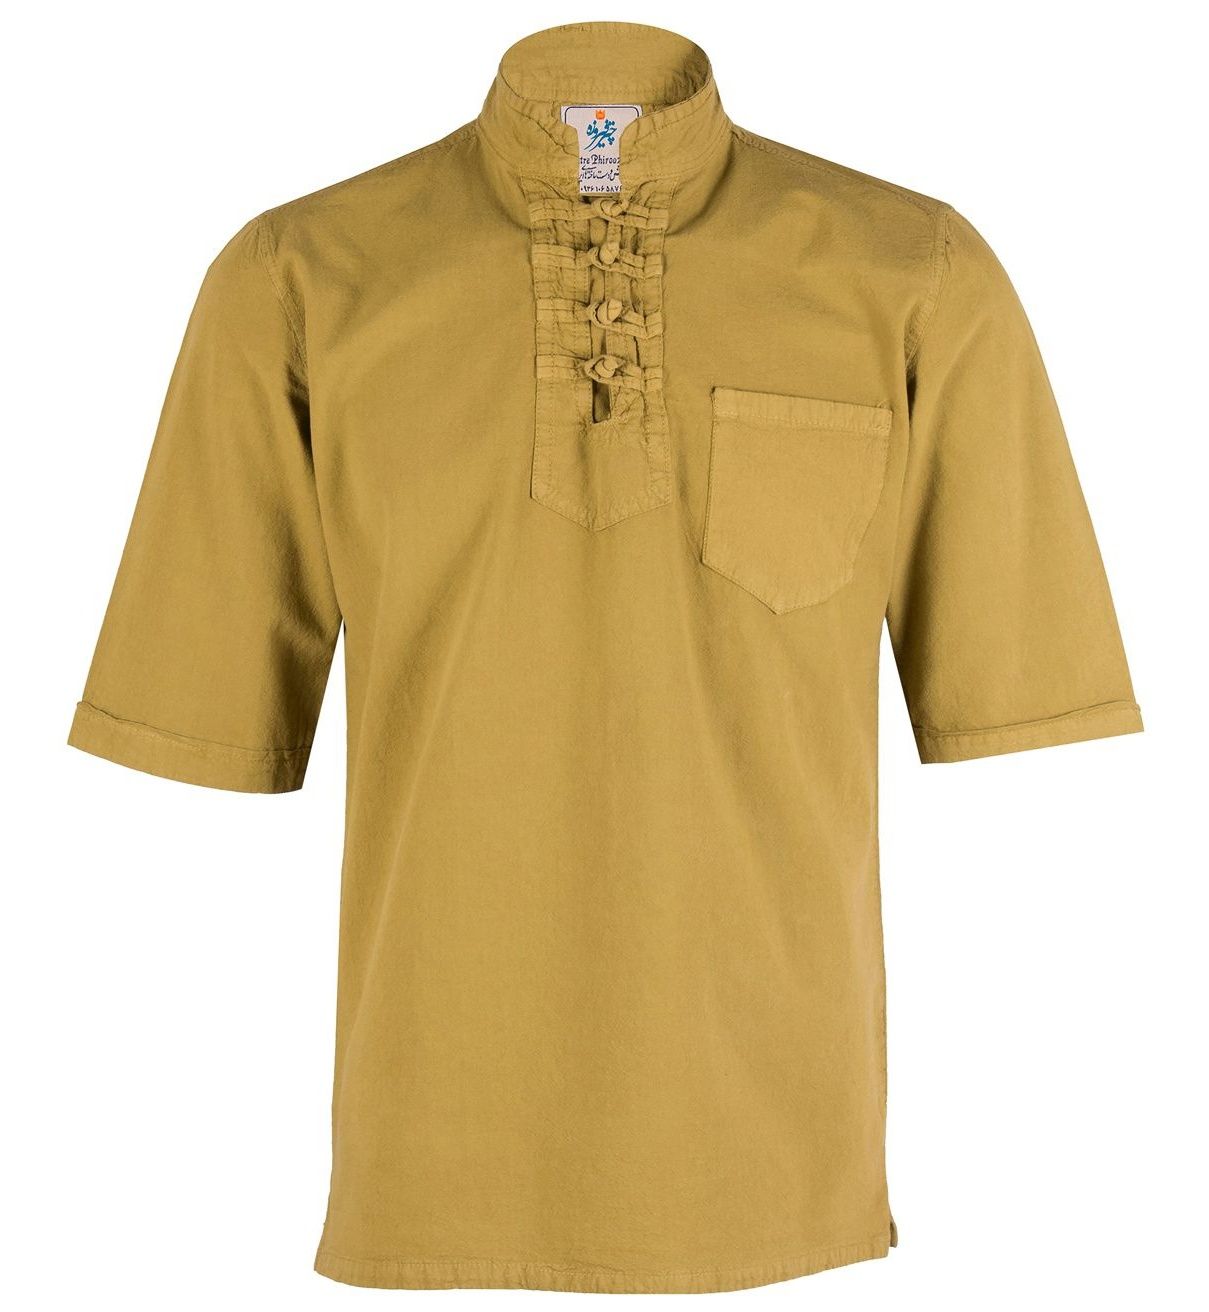 پیراهن مردانه چترفیروزه مدل چهارگره آستین کوتاه کد 8